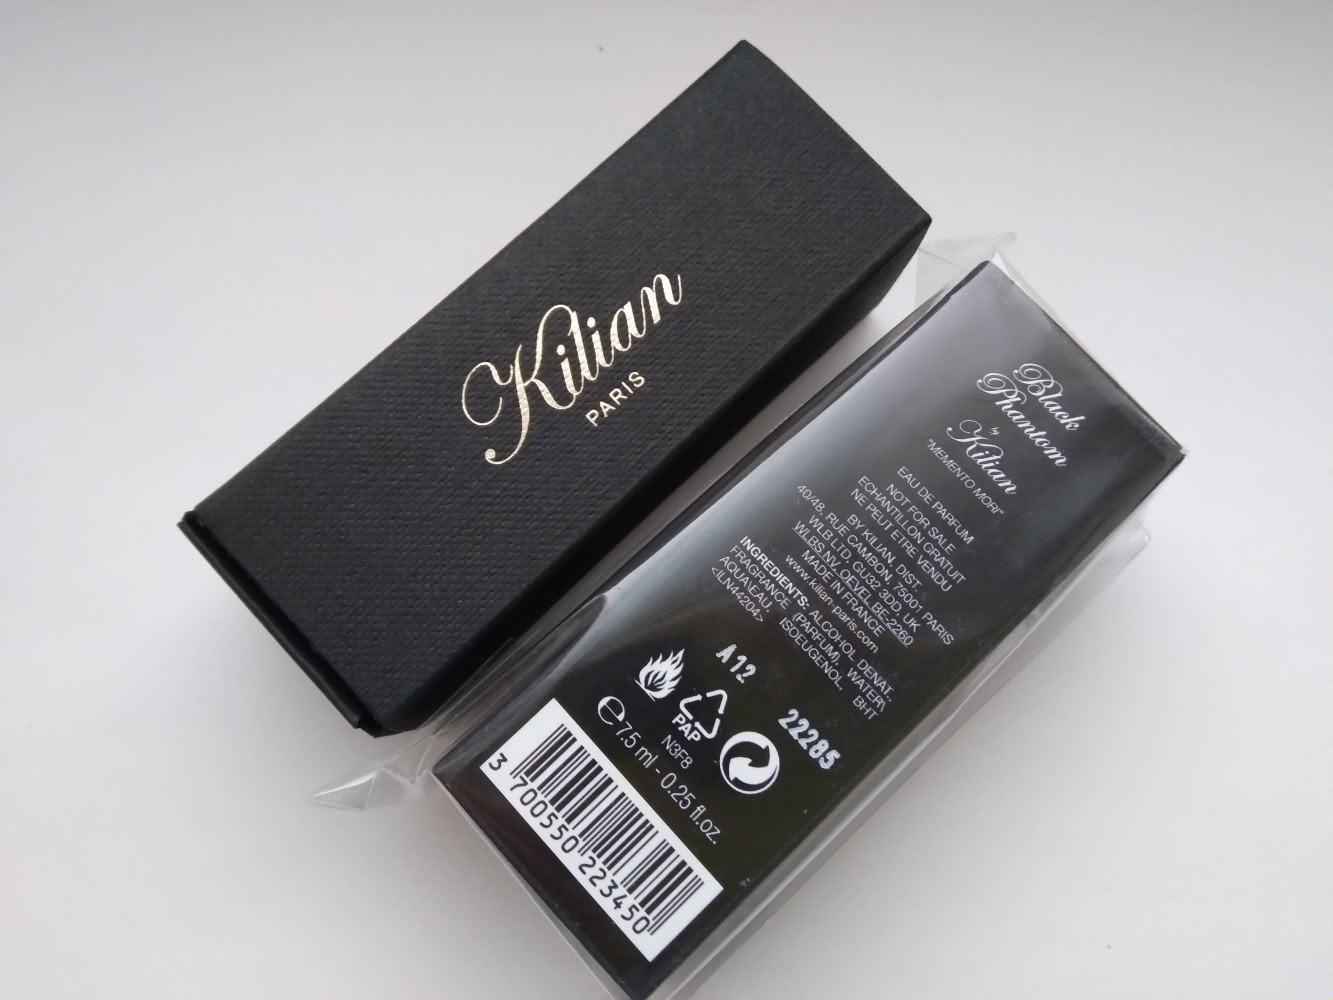 Kilian Black phantom 7.5 ml travel